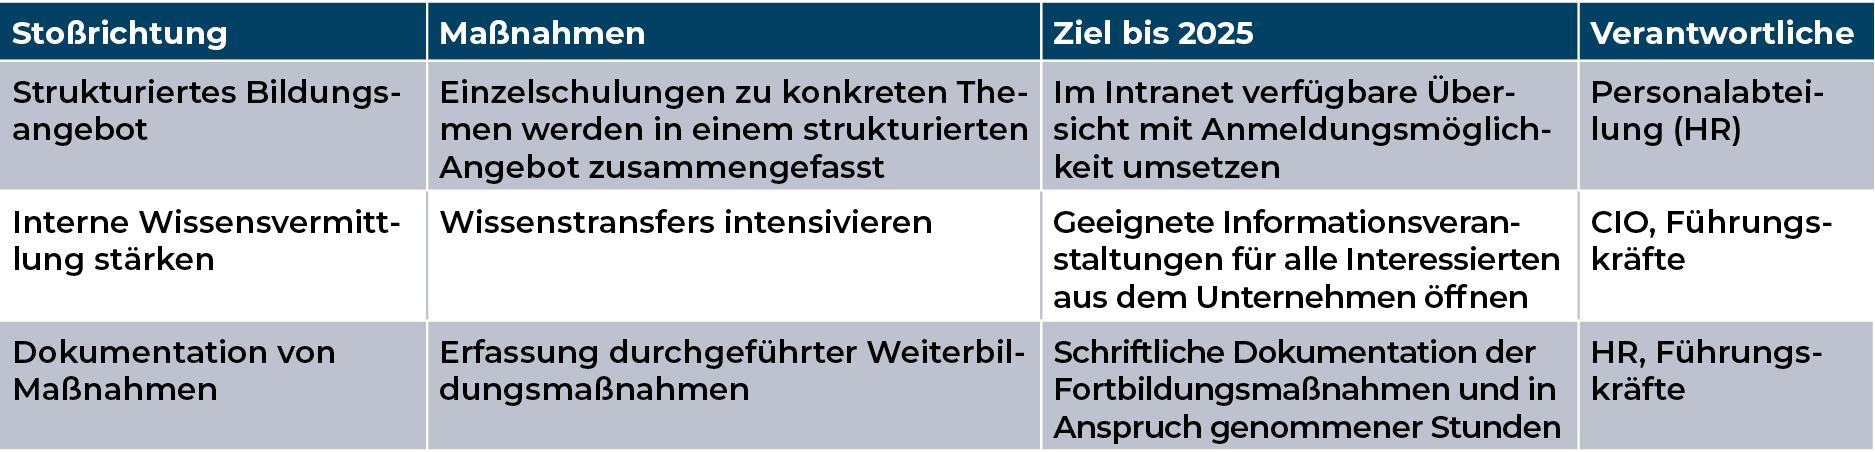 Mediengruppe Wiener Zeitung Nachhaltigkeitsbericht 2023 - mgwz_soziales_weiterbildung